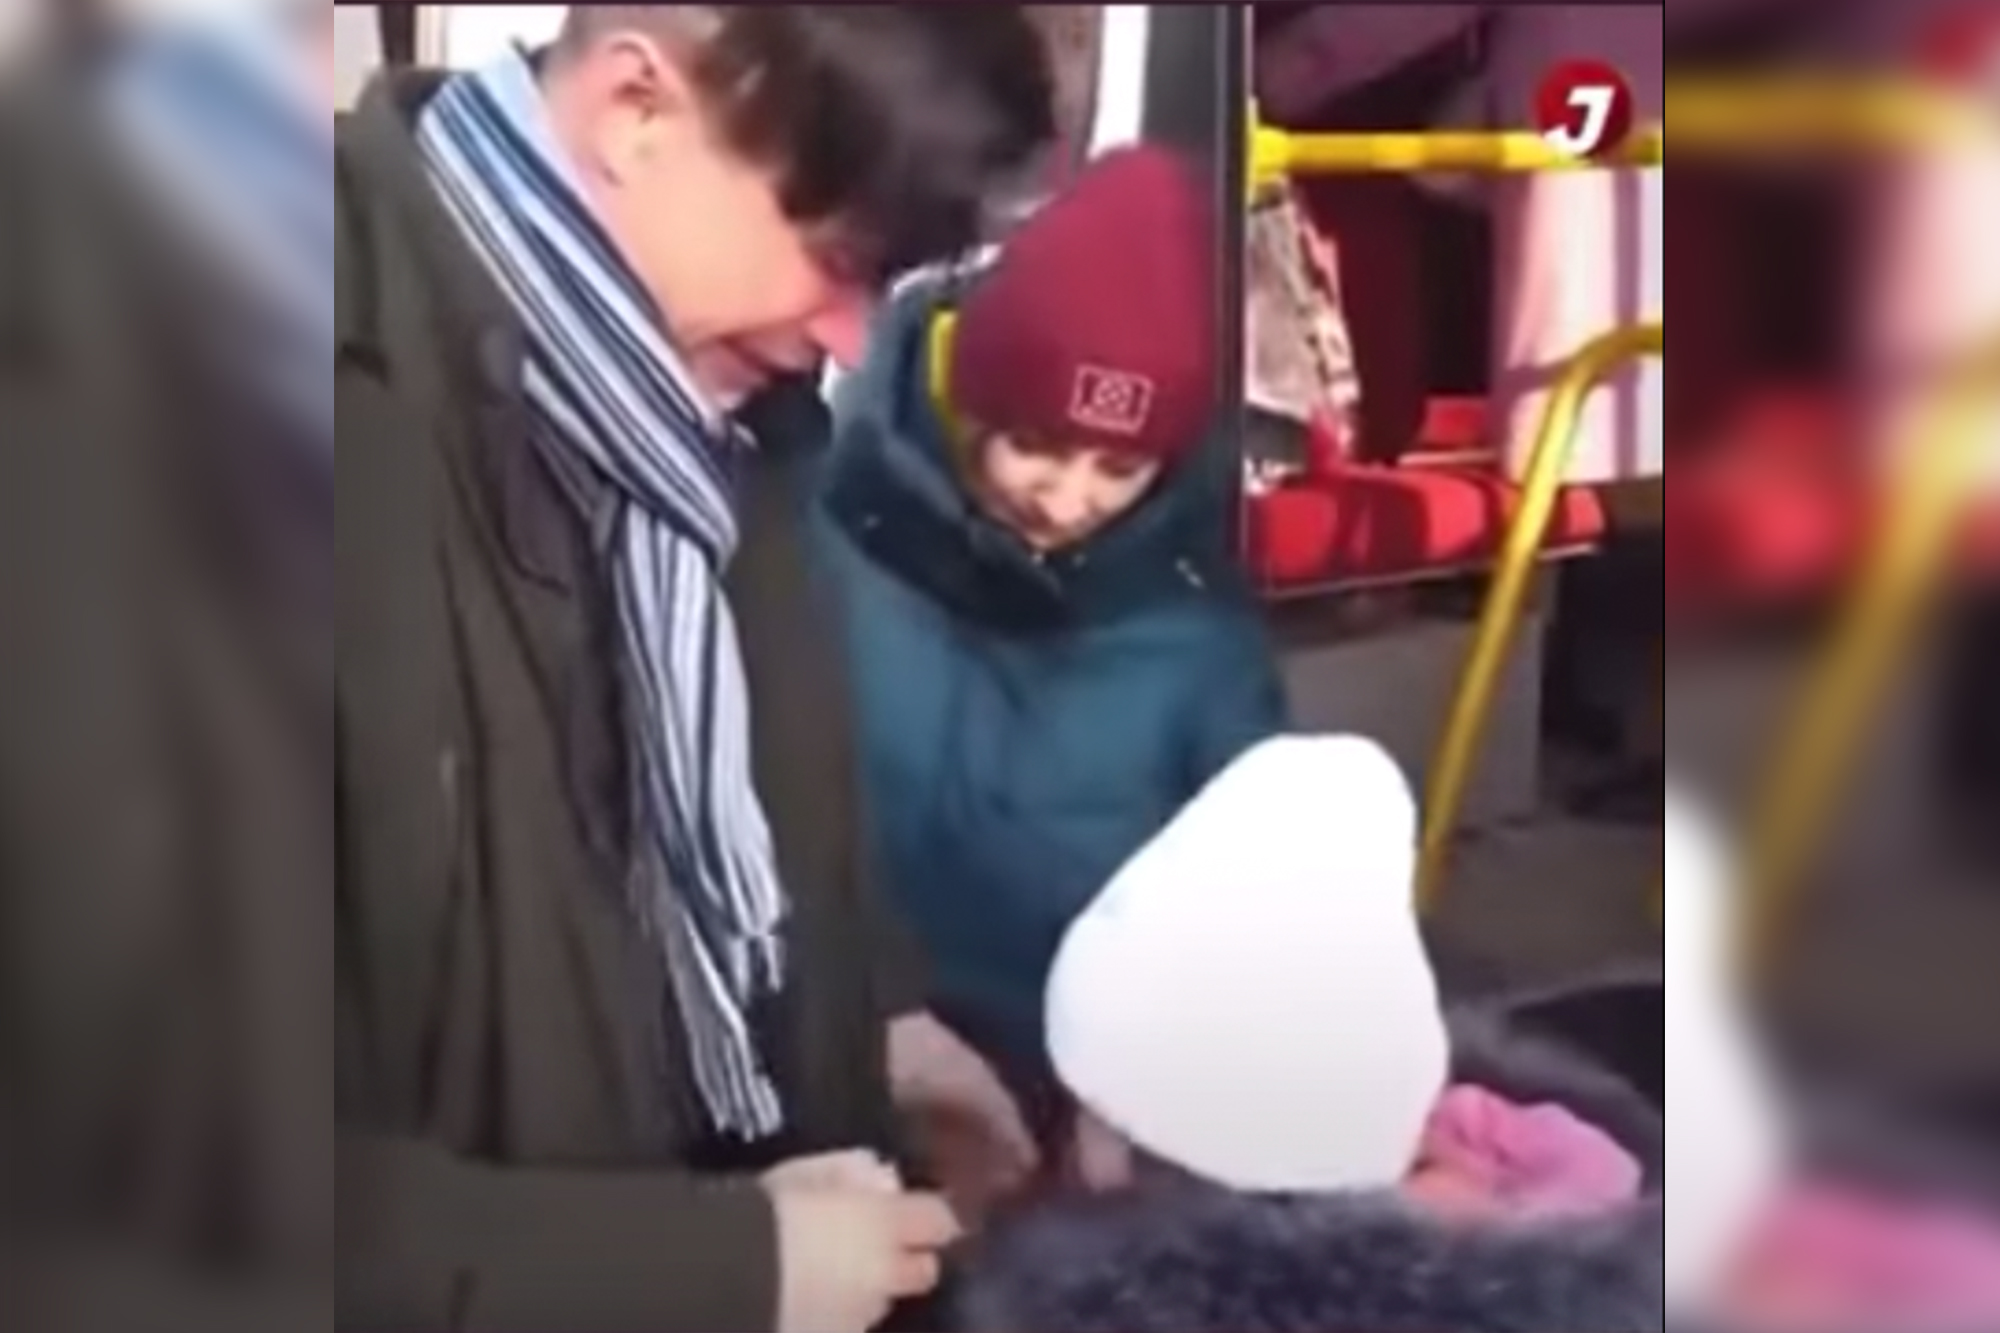 Chiến sự Ukraine: Video ông bố bật khóc tiễn con gái nhỏ đi sơ tán khiến nhiều người xúc động - Ảnh 3.